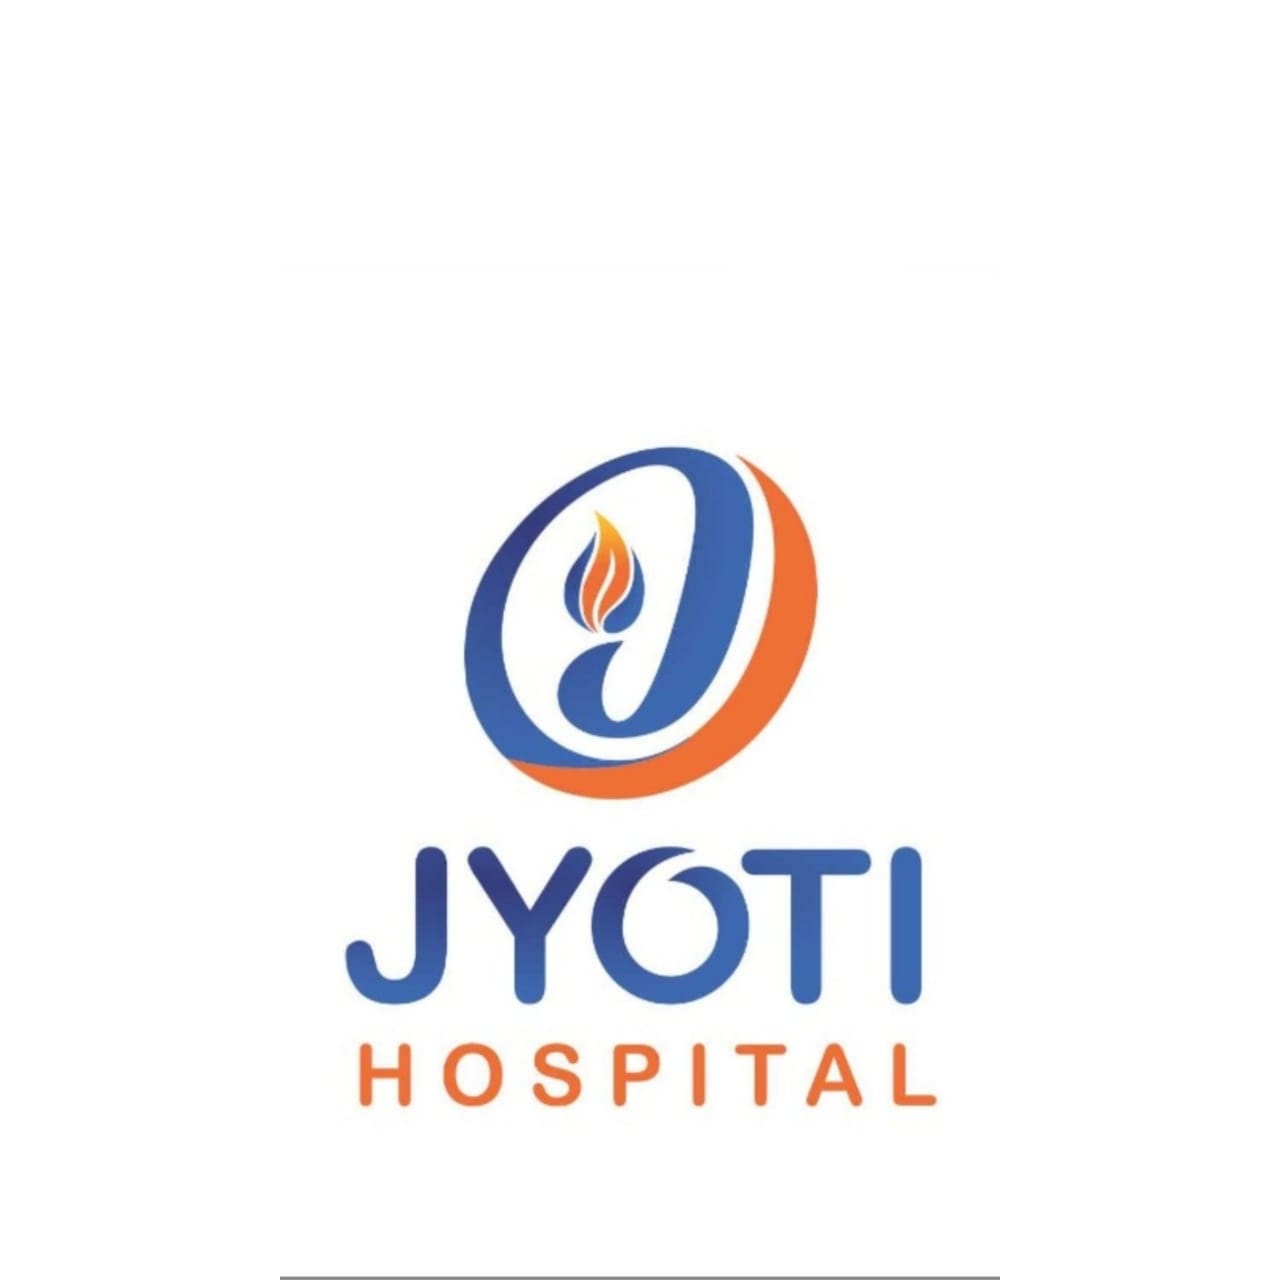 Jyoti Hospital - Cardiology Test, Gastroenterology Test, X-Ray & Radiology Services, Diabetes Treatment, Urology Specialist, Dermatology Specialist